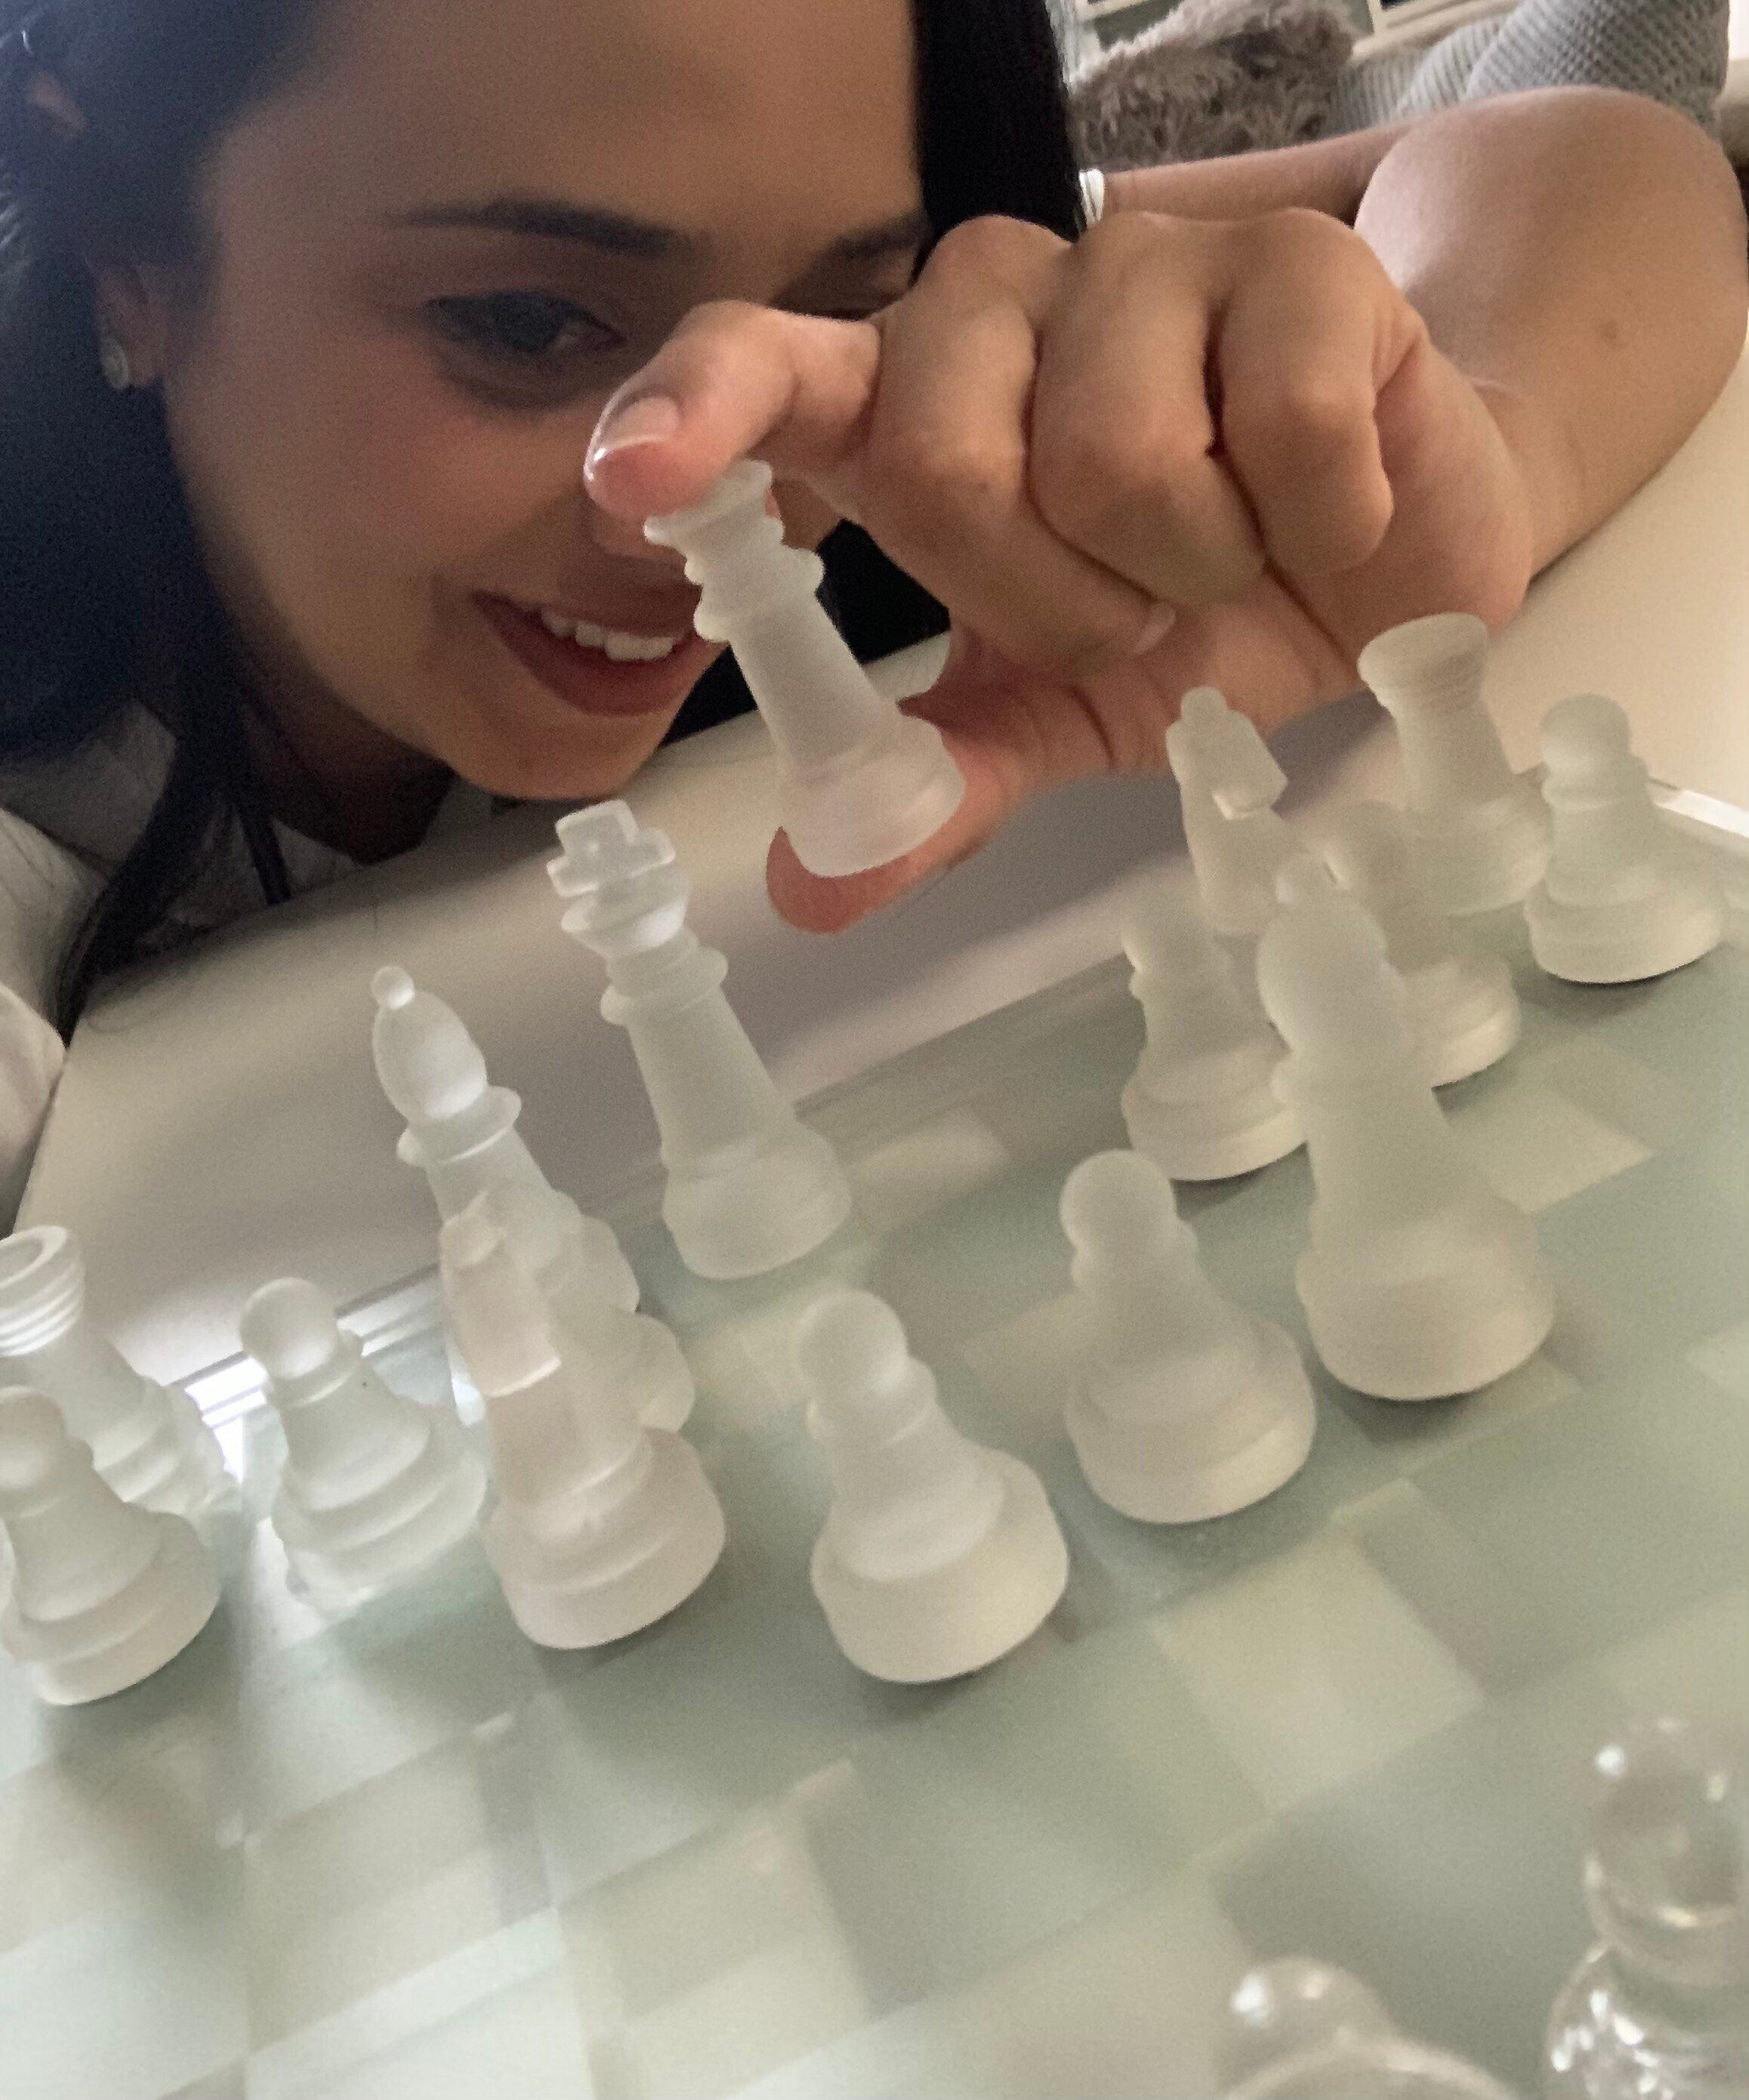 O Gambito da Rainha' faz interesse por xadrez atingir nível recorde e muda  hábitos do público